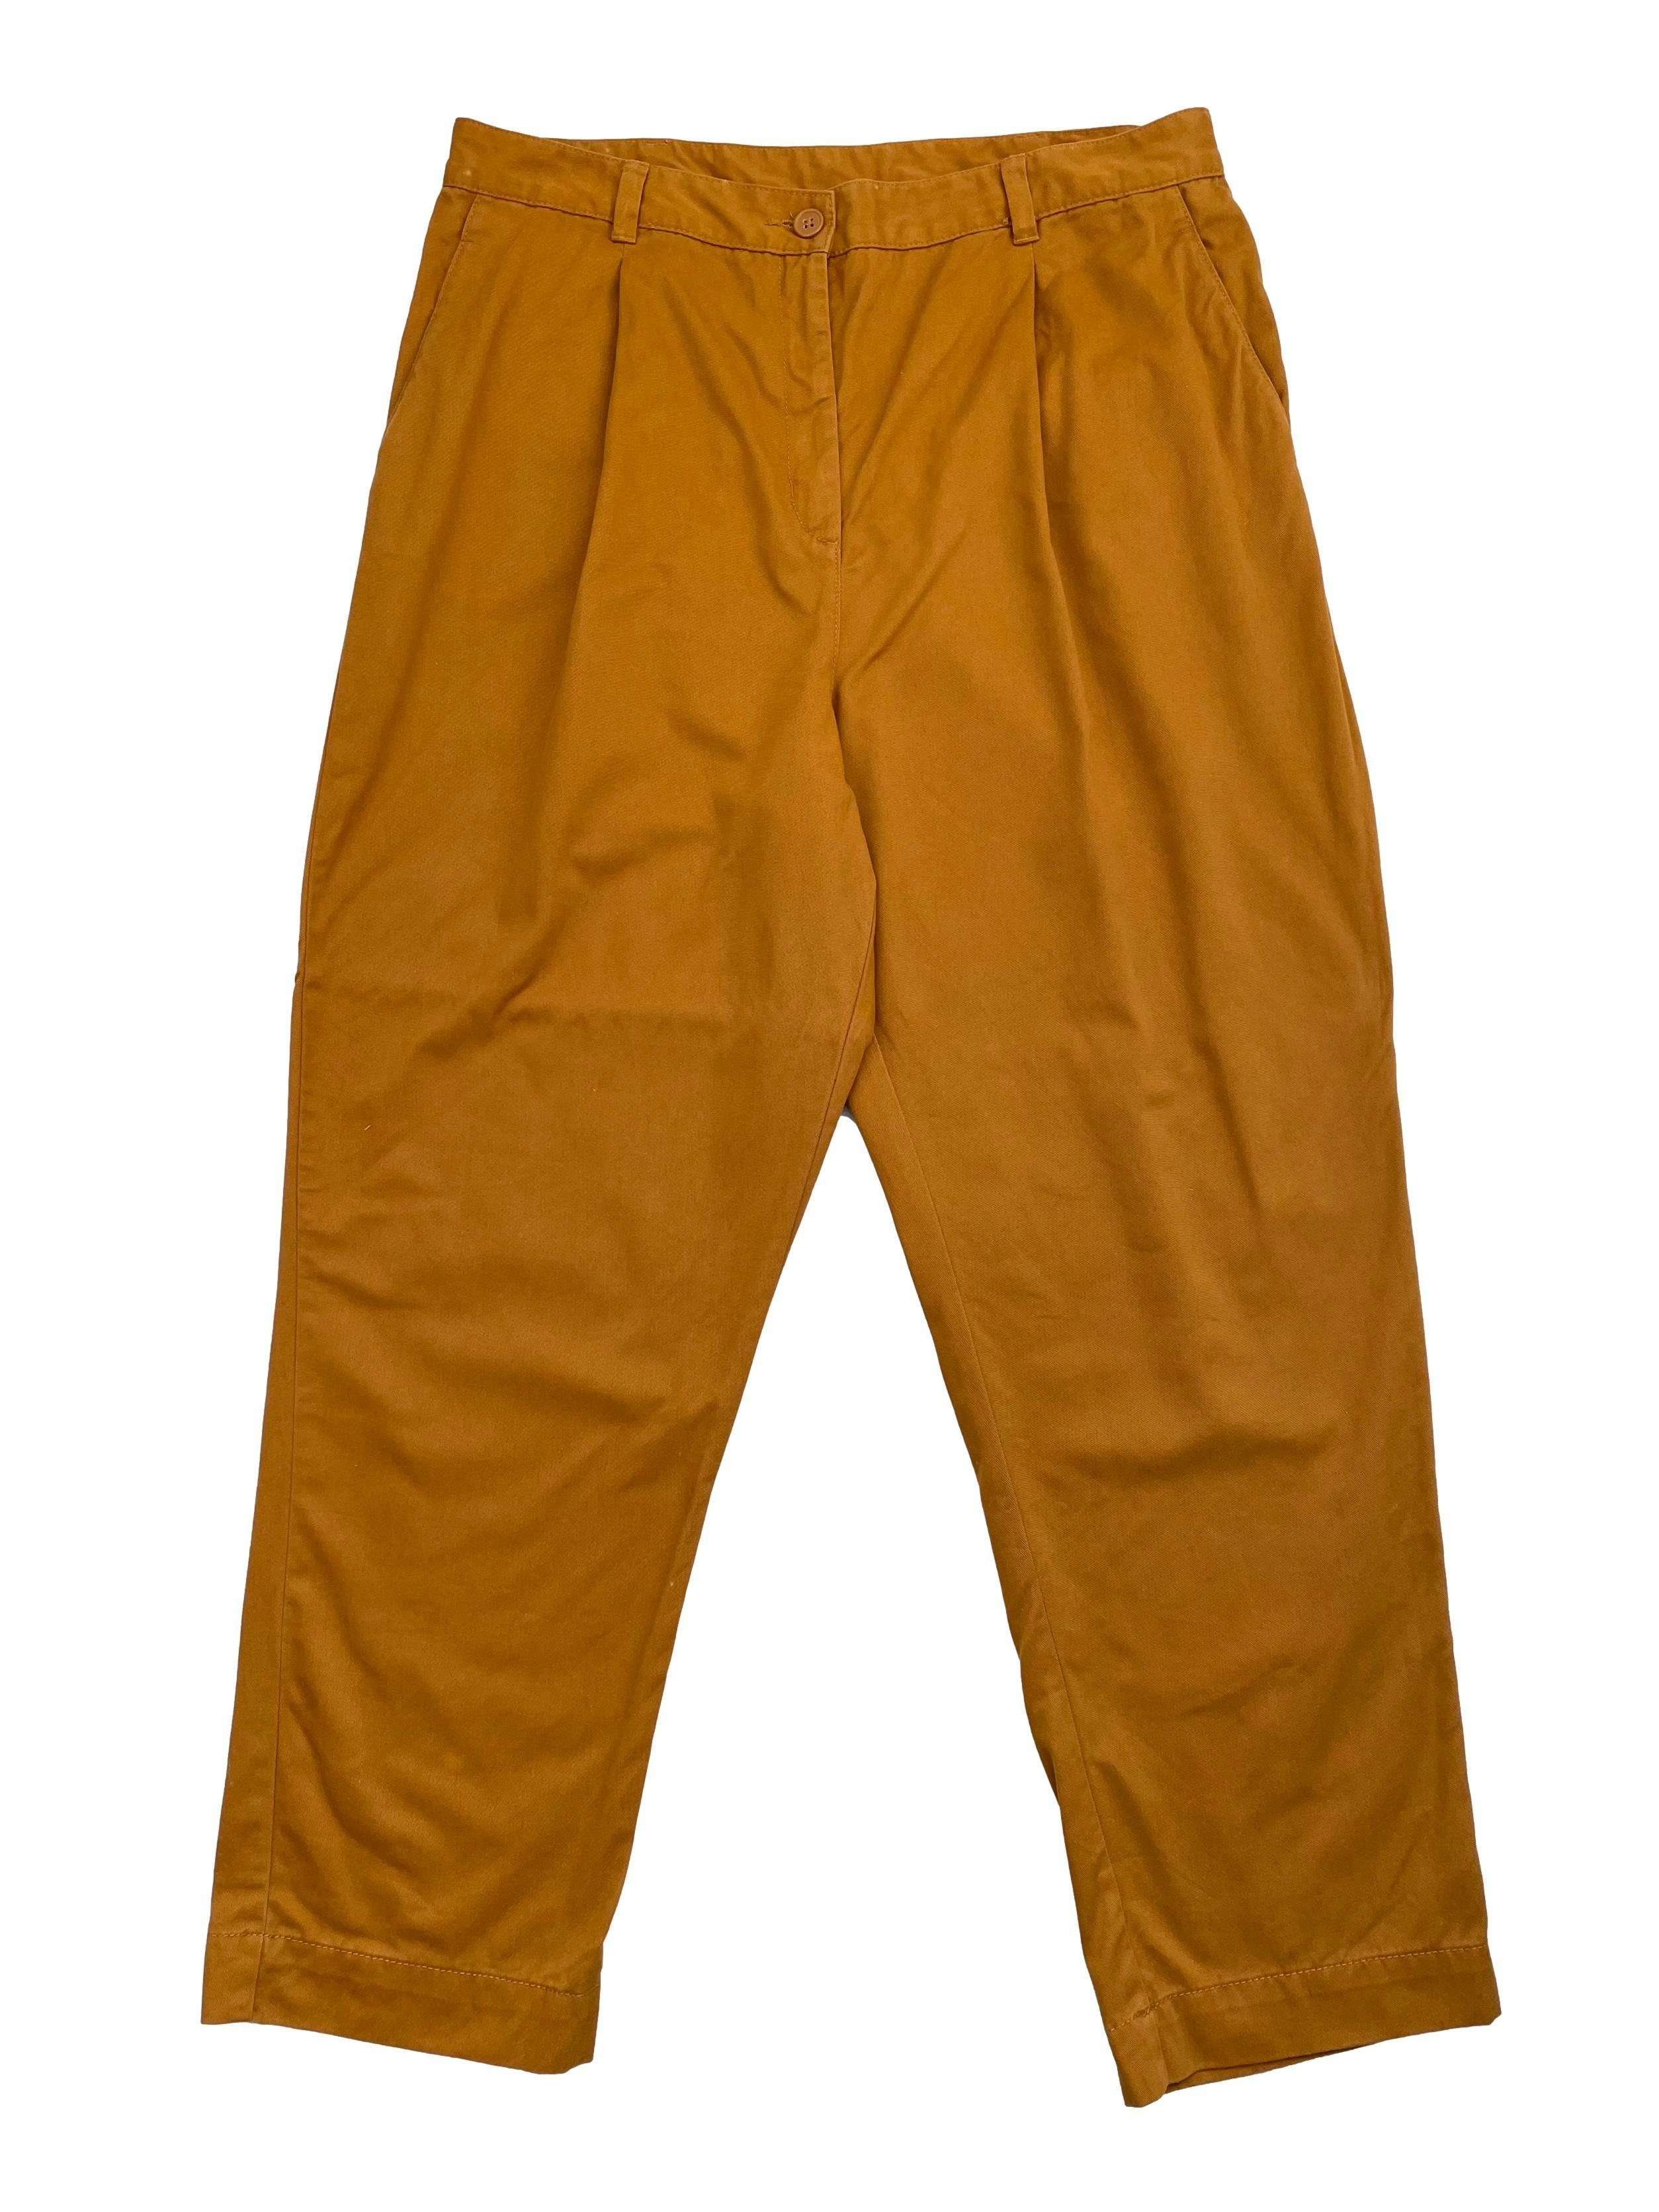 Pantalón Monki de drill 100% algodón camel, con pinzas, bolsillos laterales y traseros. Cintura 88cm Largo 102cm